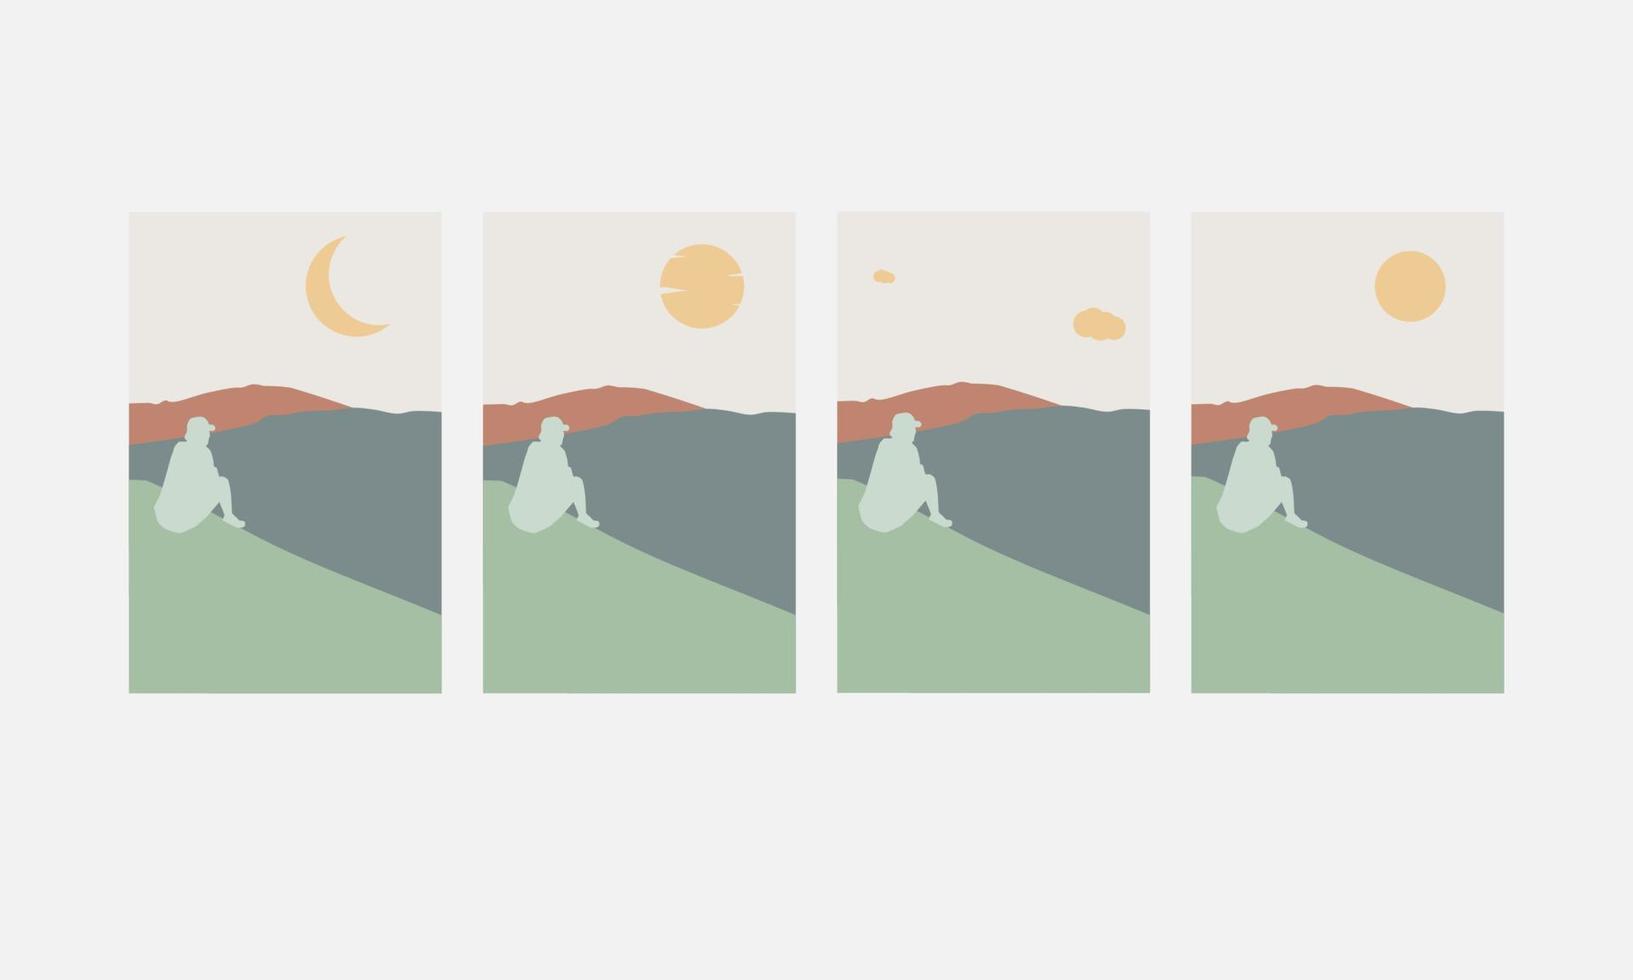 conjunto de fondos abstractos de carteles estéticos minimalistas con montañas y paisajes marinos. vector